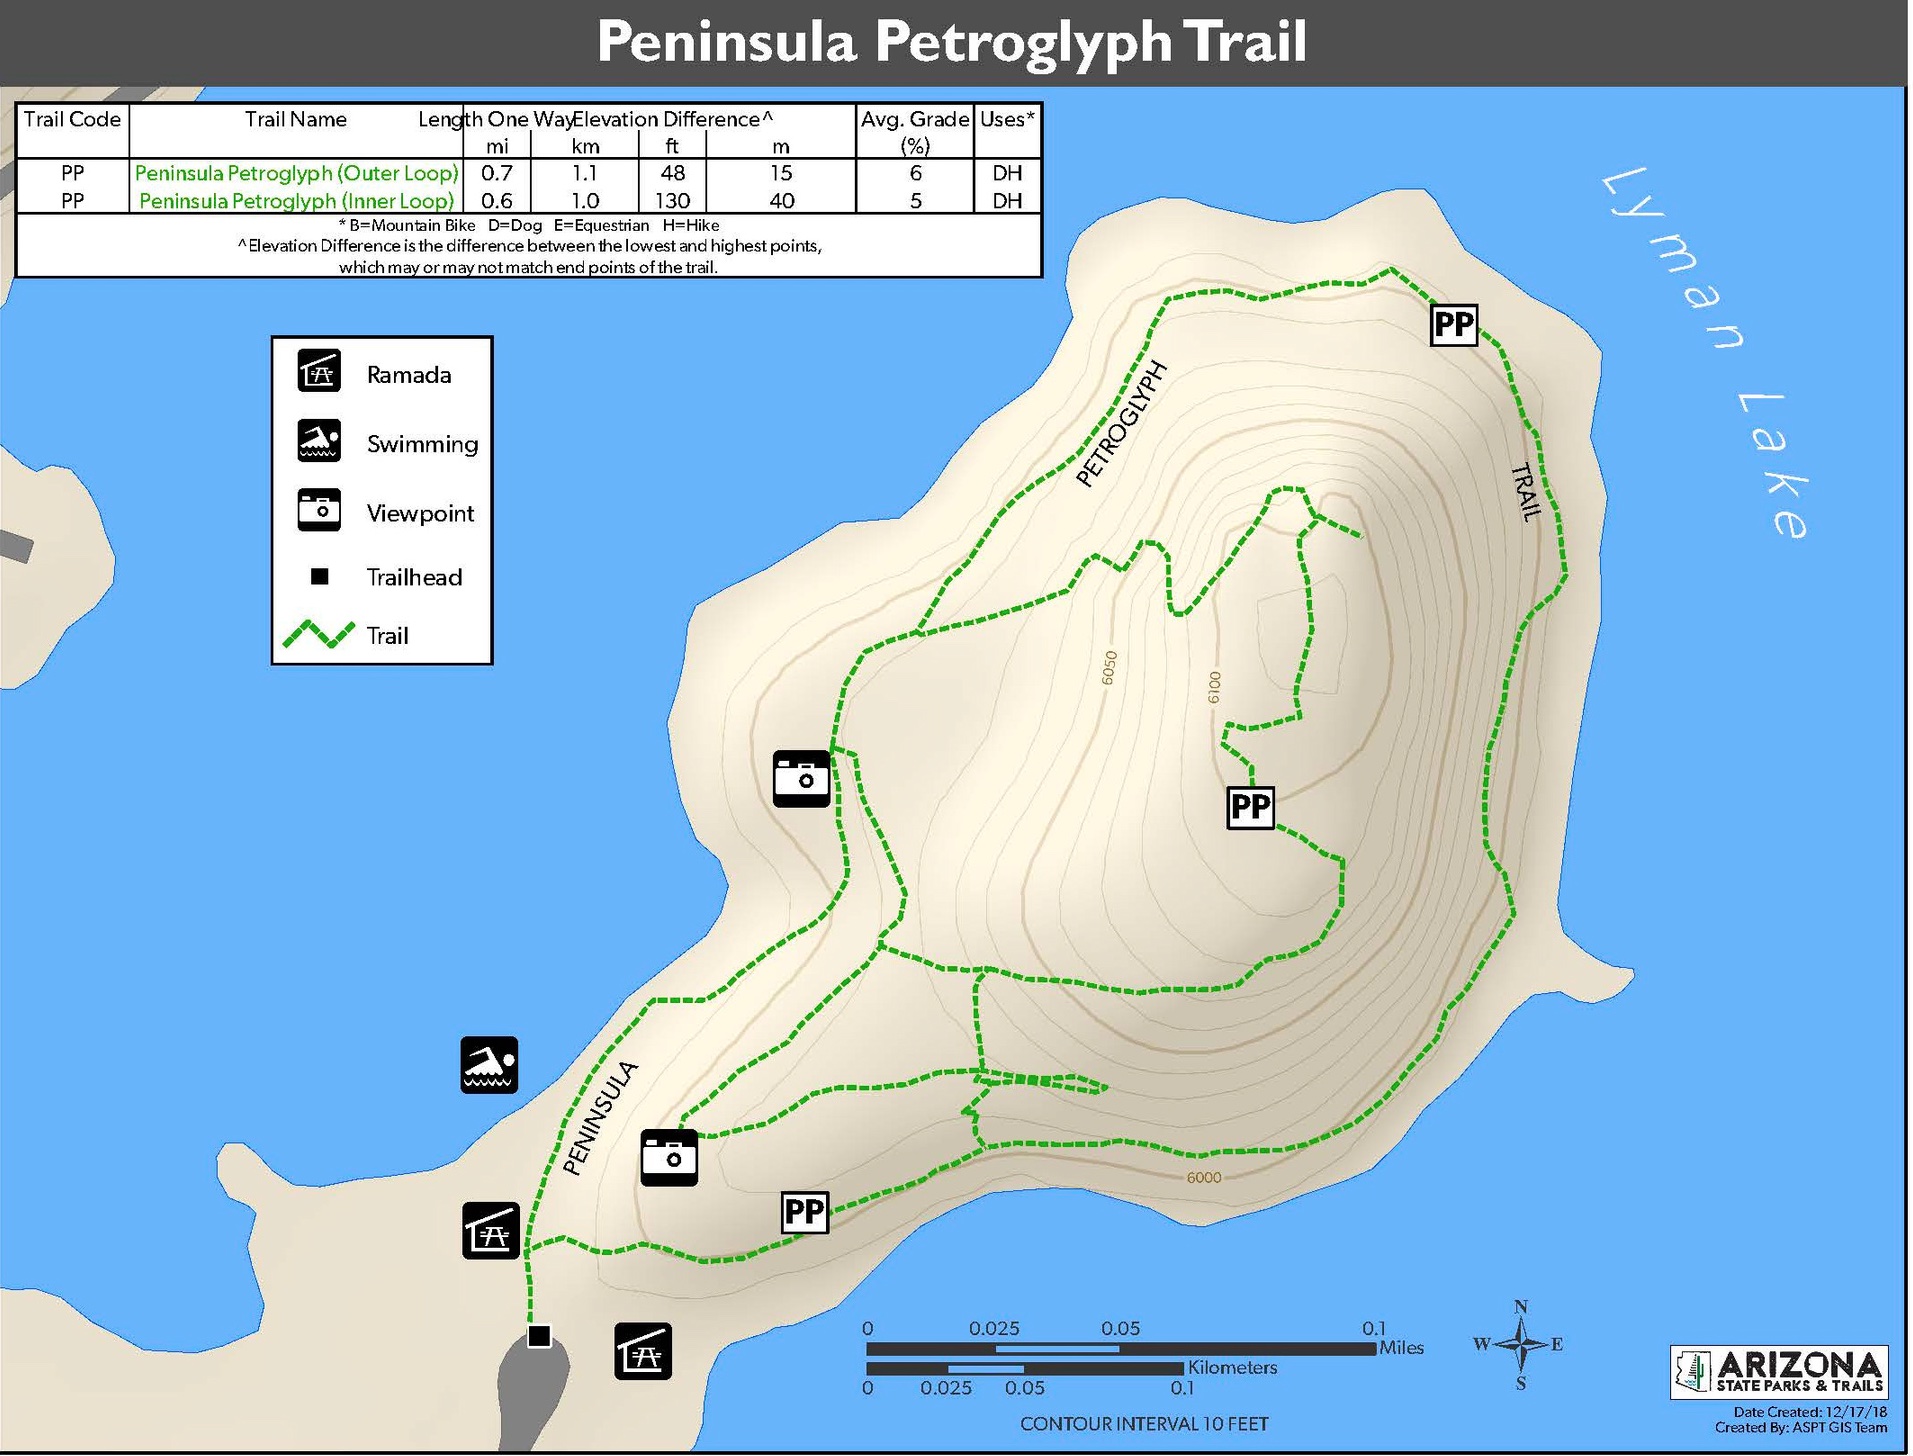 A GIS map of the Peninsula Petroglyph Trail at Lyman Lake